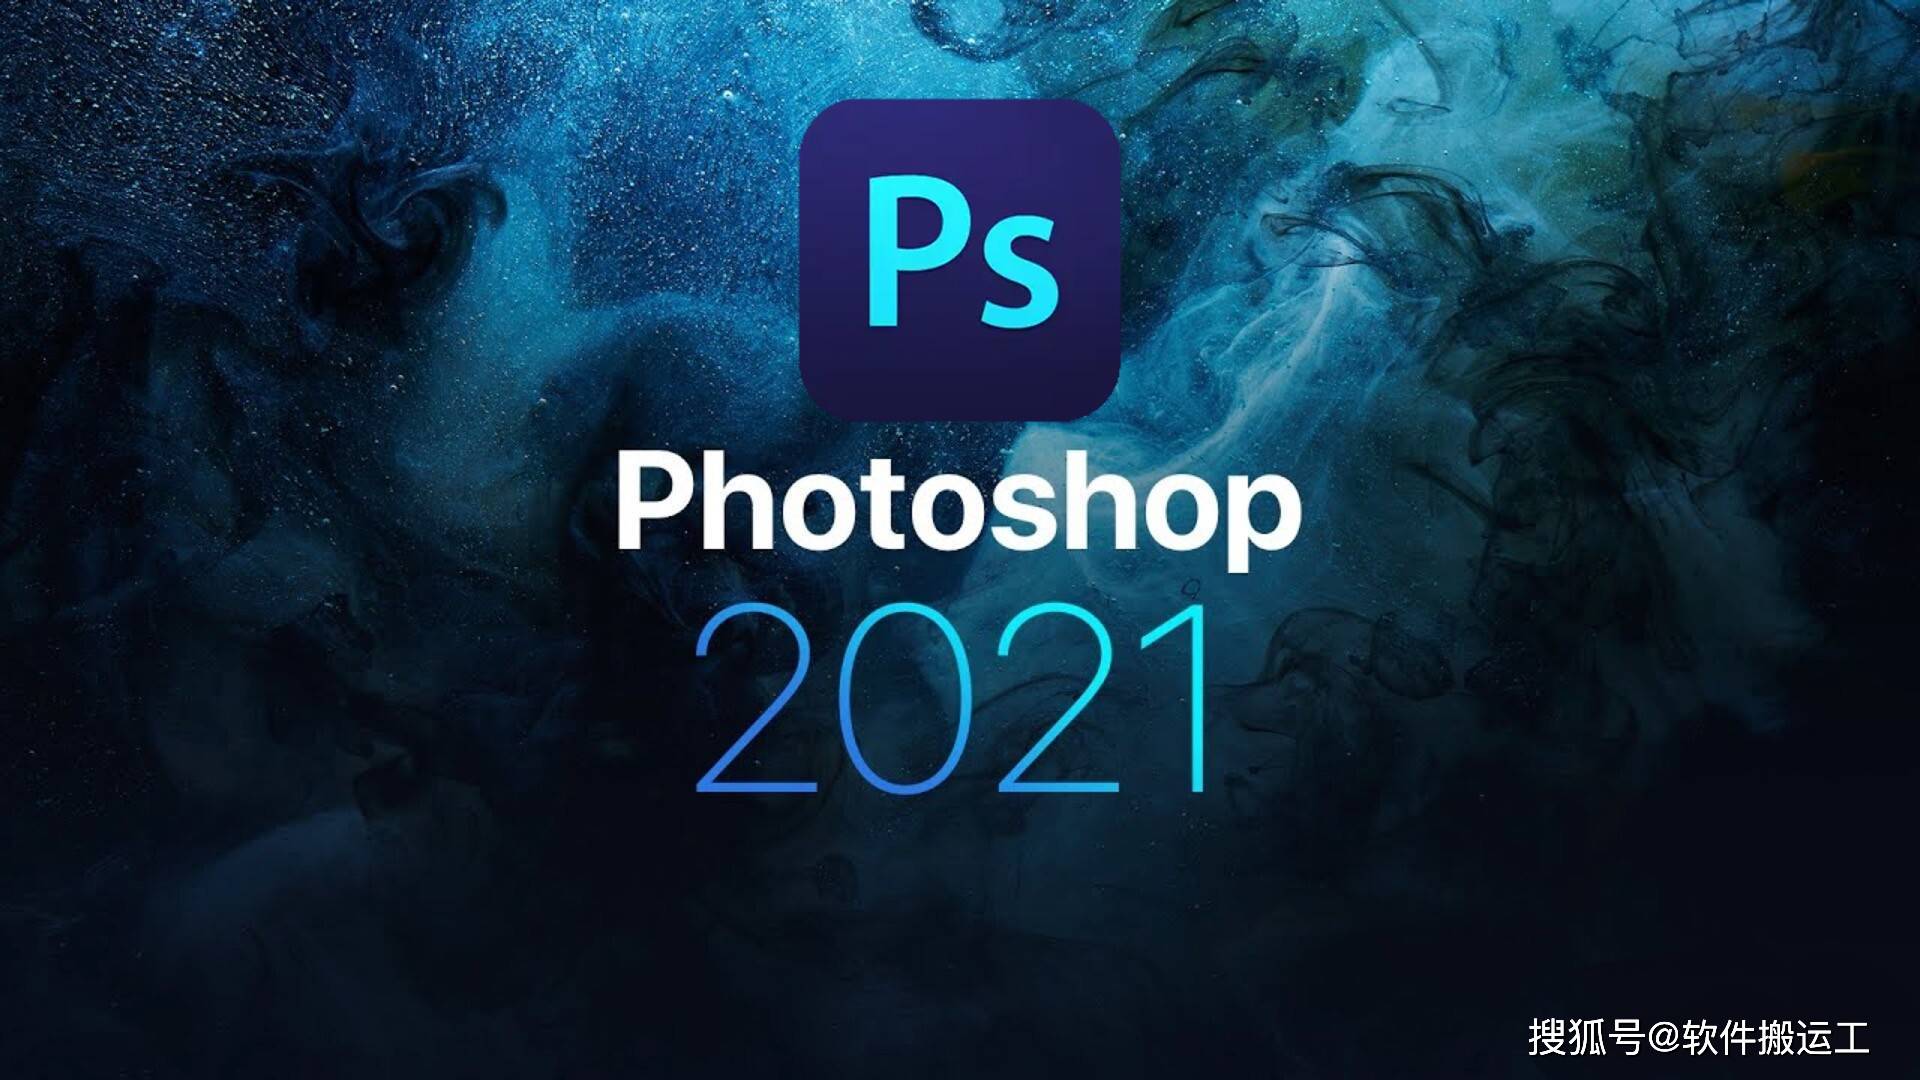 下载像素狙击破解版苹果:Adobe Photoshop CC 2021（PS CC2021）中文破解版安装包下载及安装教程